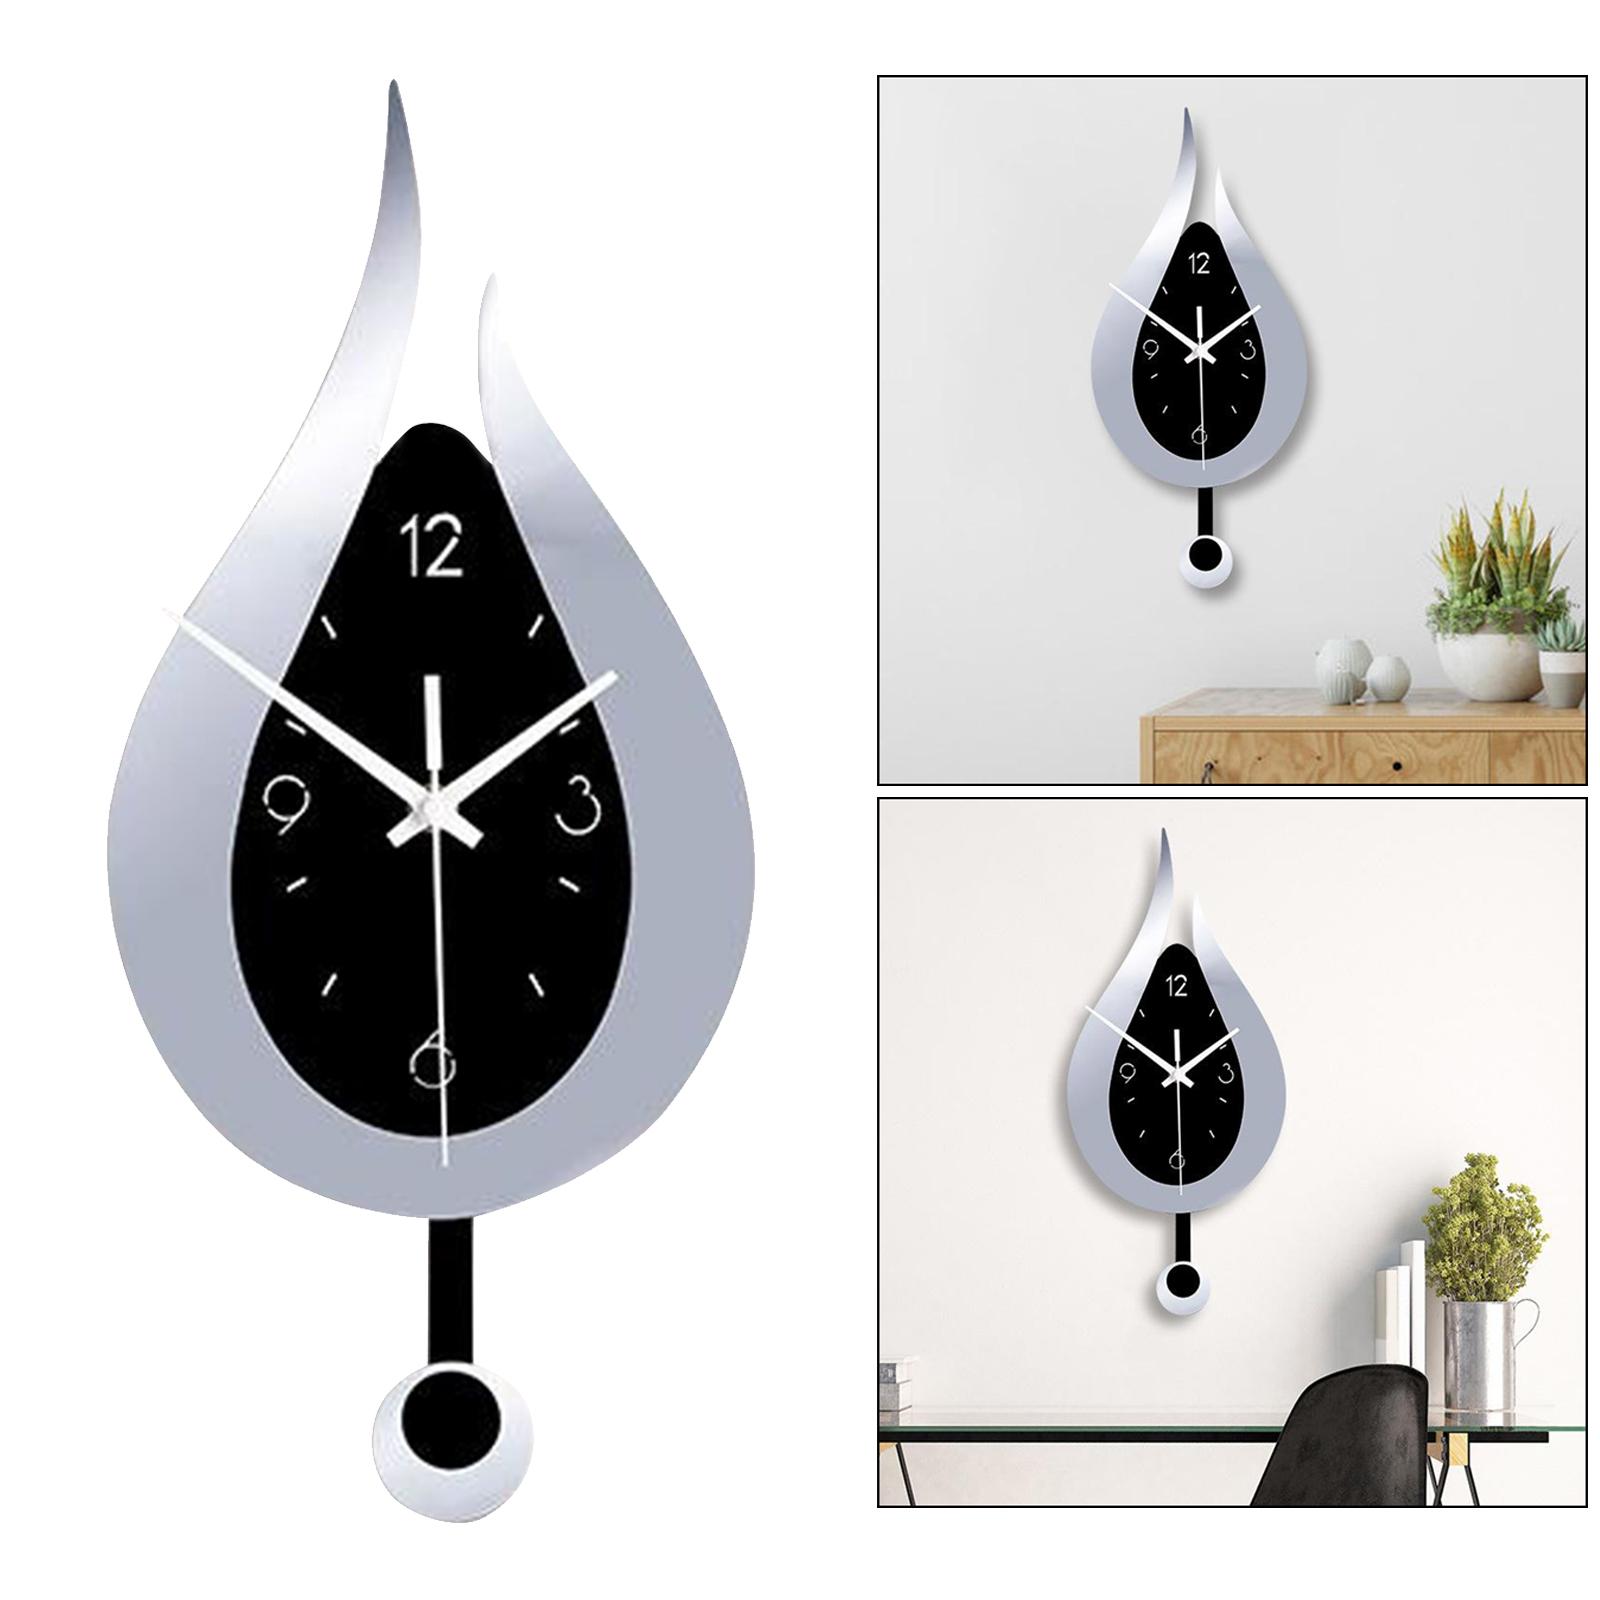 Modern Pendulum Kitchen Wall Clocks Battery Operated Decorative Silver